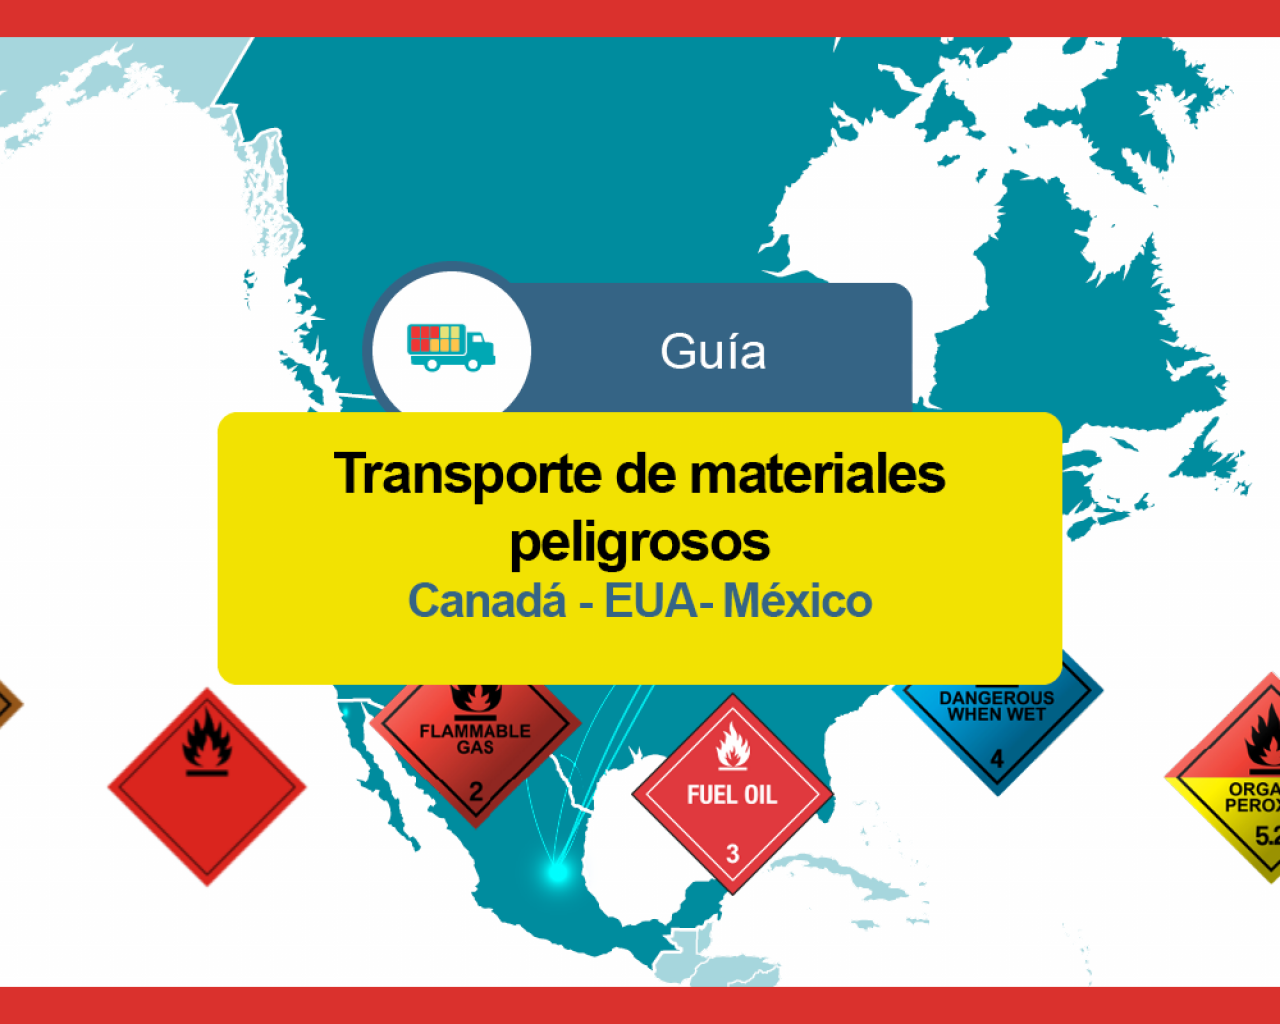 Transporte de materiales peligrosos Mexico EUA Canada